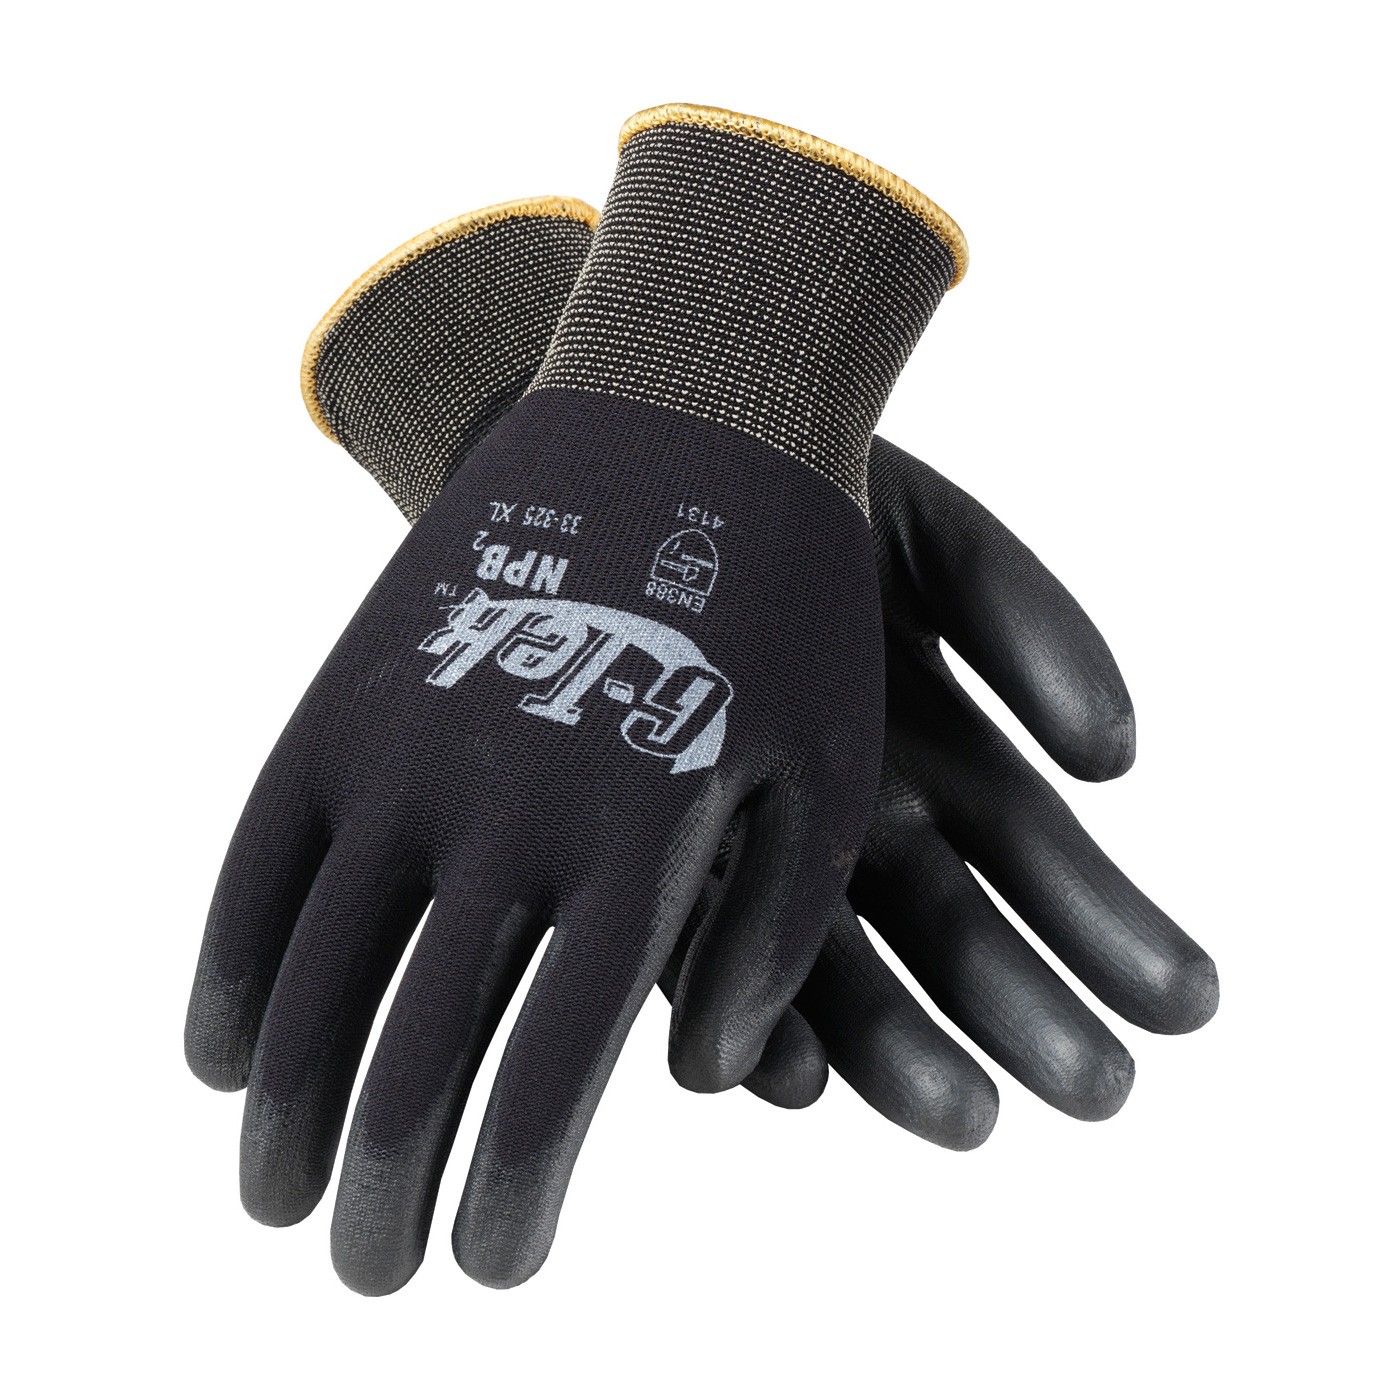 Glove Nylon Black Urethane Coated Seamless Knit Med 25DZPR/PK